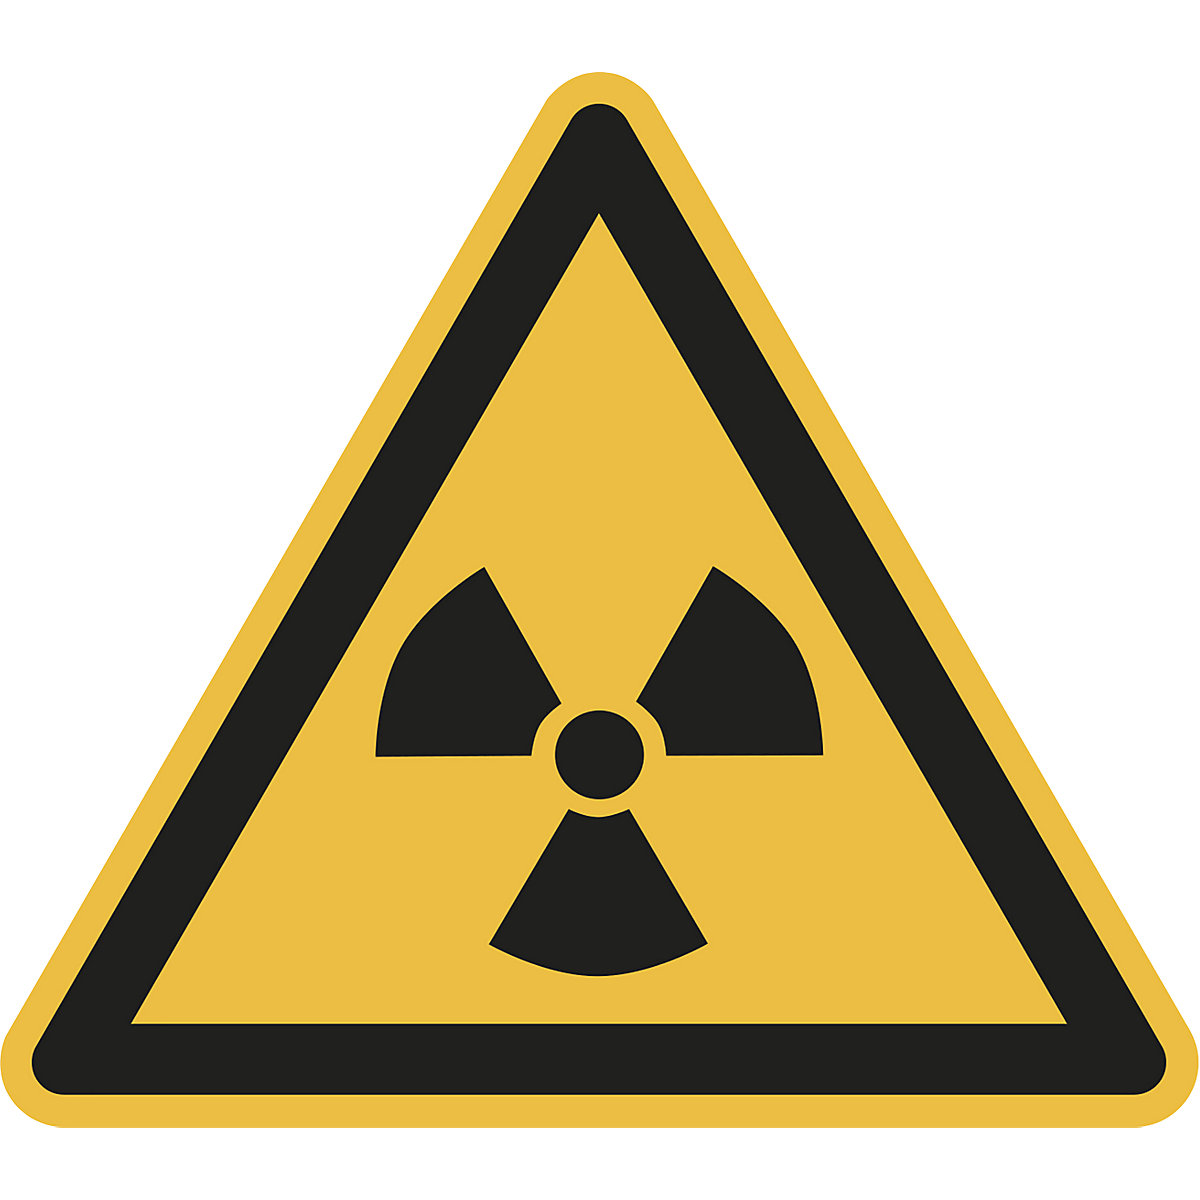 Figyelmeztető jel, figyelmeztetés radioaktív anyagokra vagy ionizáló sugárzásra, cs. e. 10 db, alumínium, szárhossz 200 mm-1